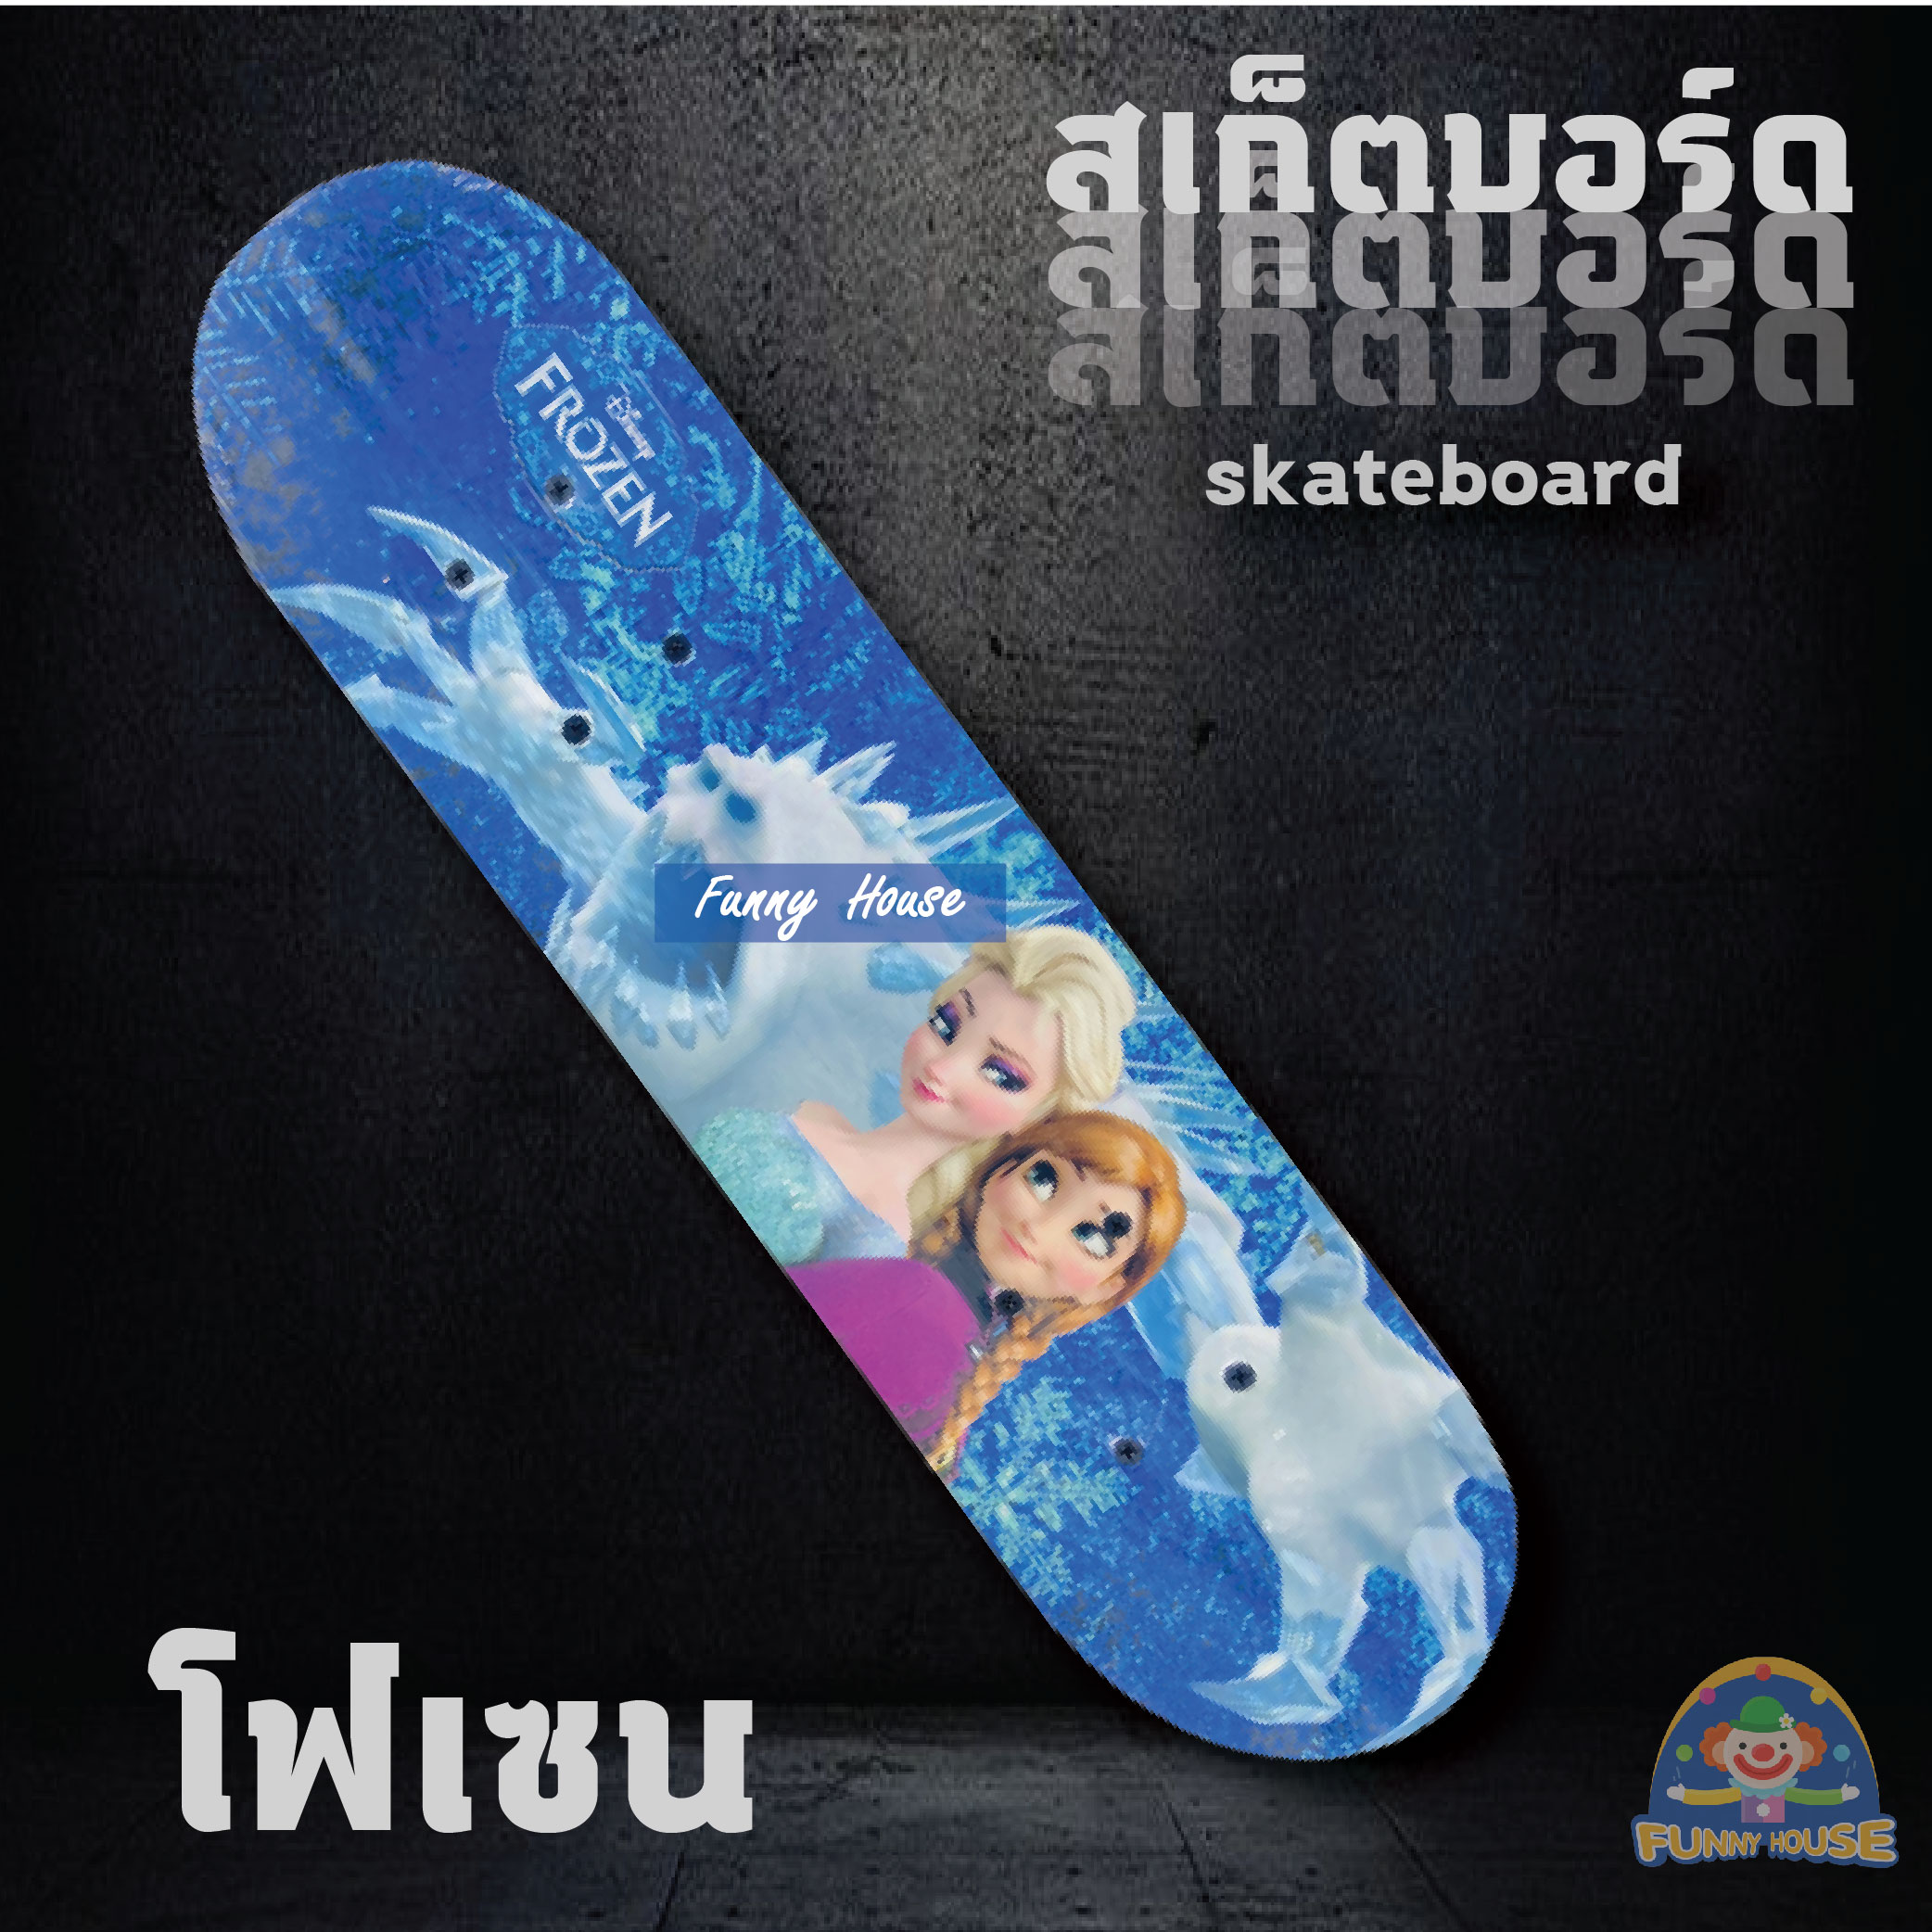 Skate board สเก็ตบอร์ดสำหรับเด็ก ล้อมีไฟ skateboard ขนาด 60*15 ซม. สเก็ตบอร์ด 4 ล้อ (คละลายเด็กหญิง/เด็กชาย) มีไฟ